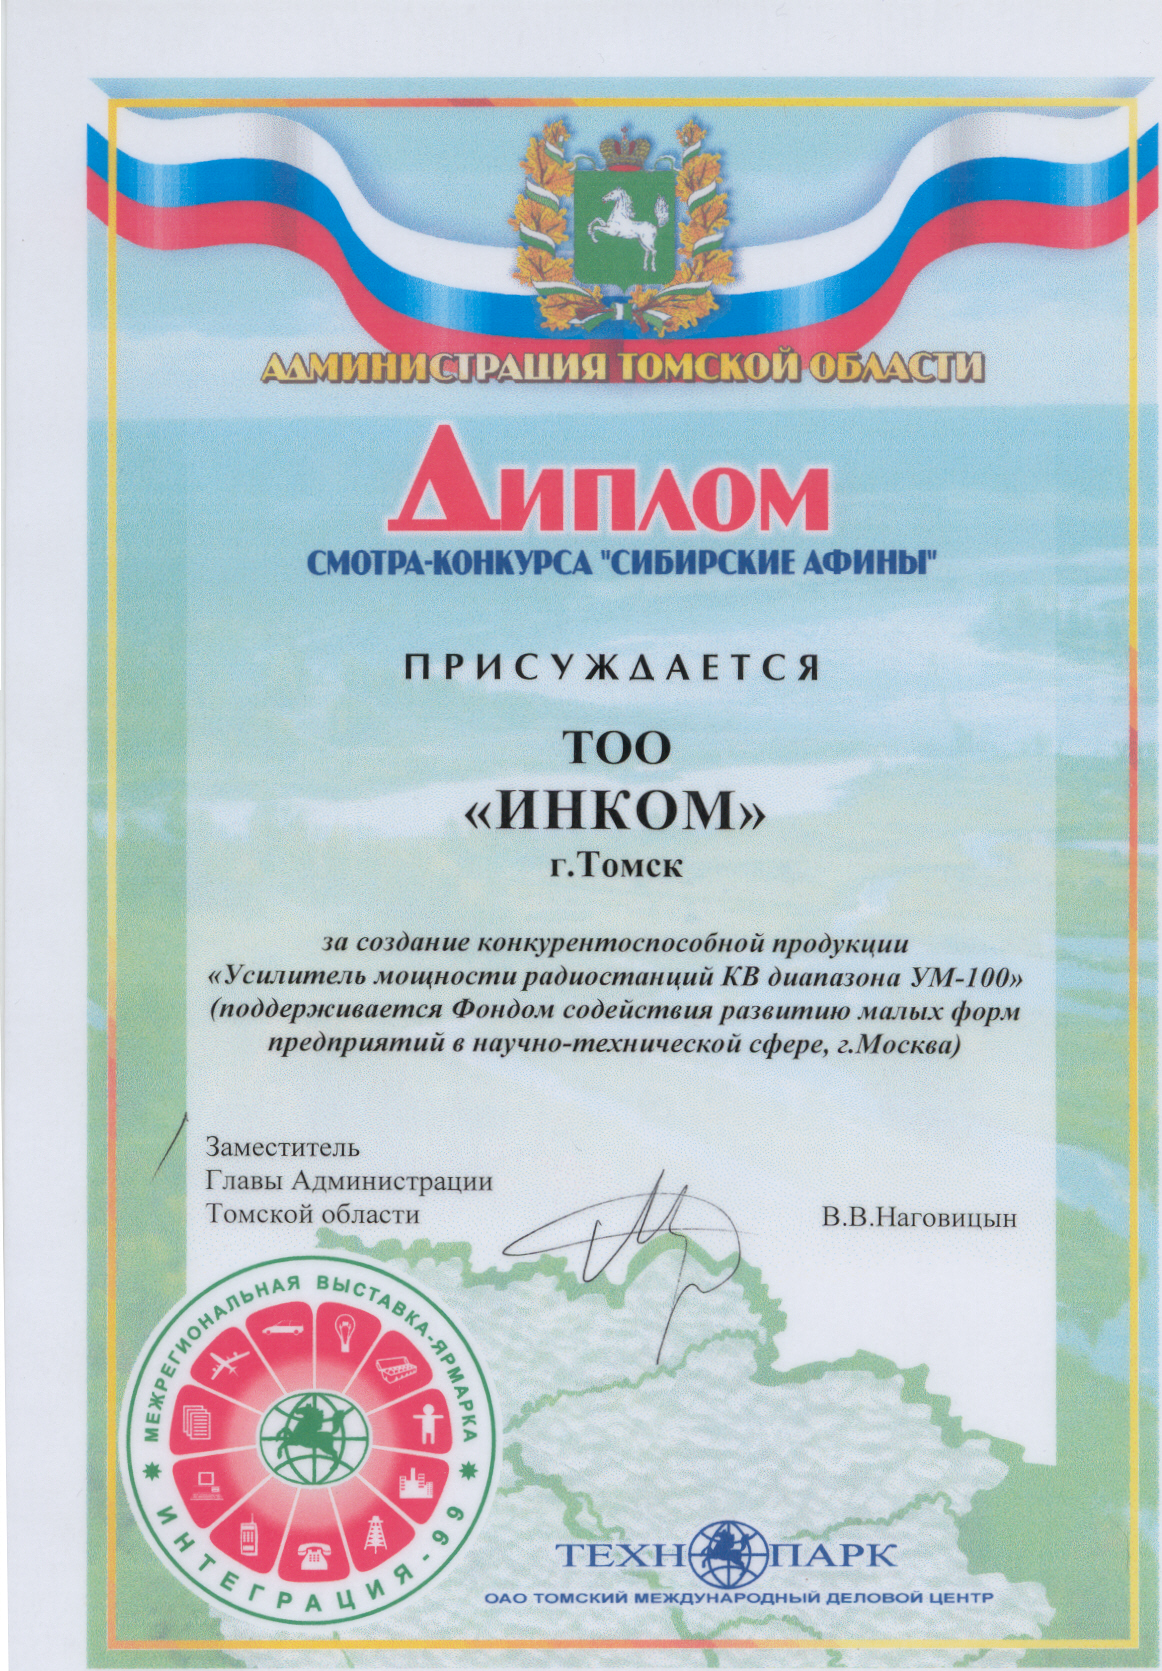 Диплом выставки "Интеграция" за усилитель мощности радиостанций КВ диапазона "УМ-100"